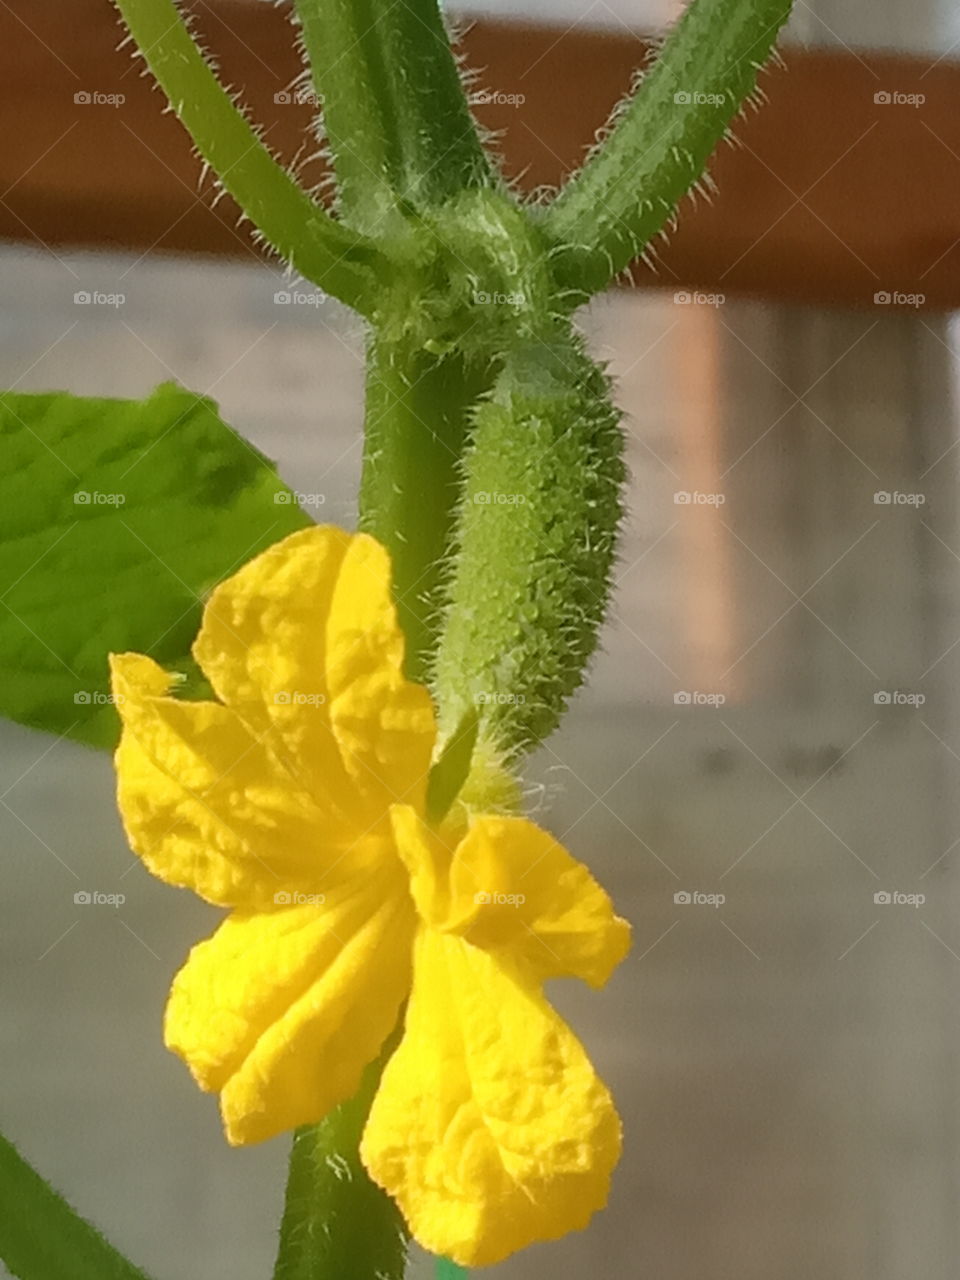 flowering cucumber